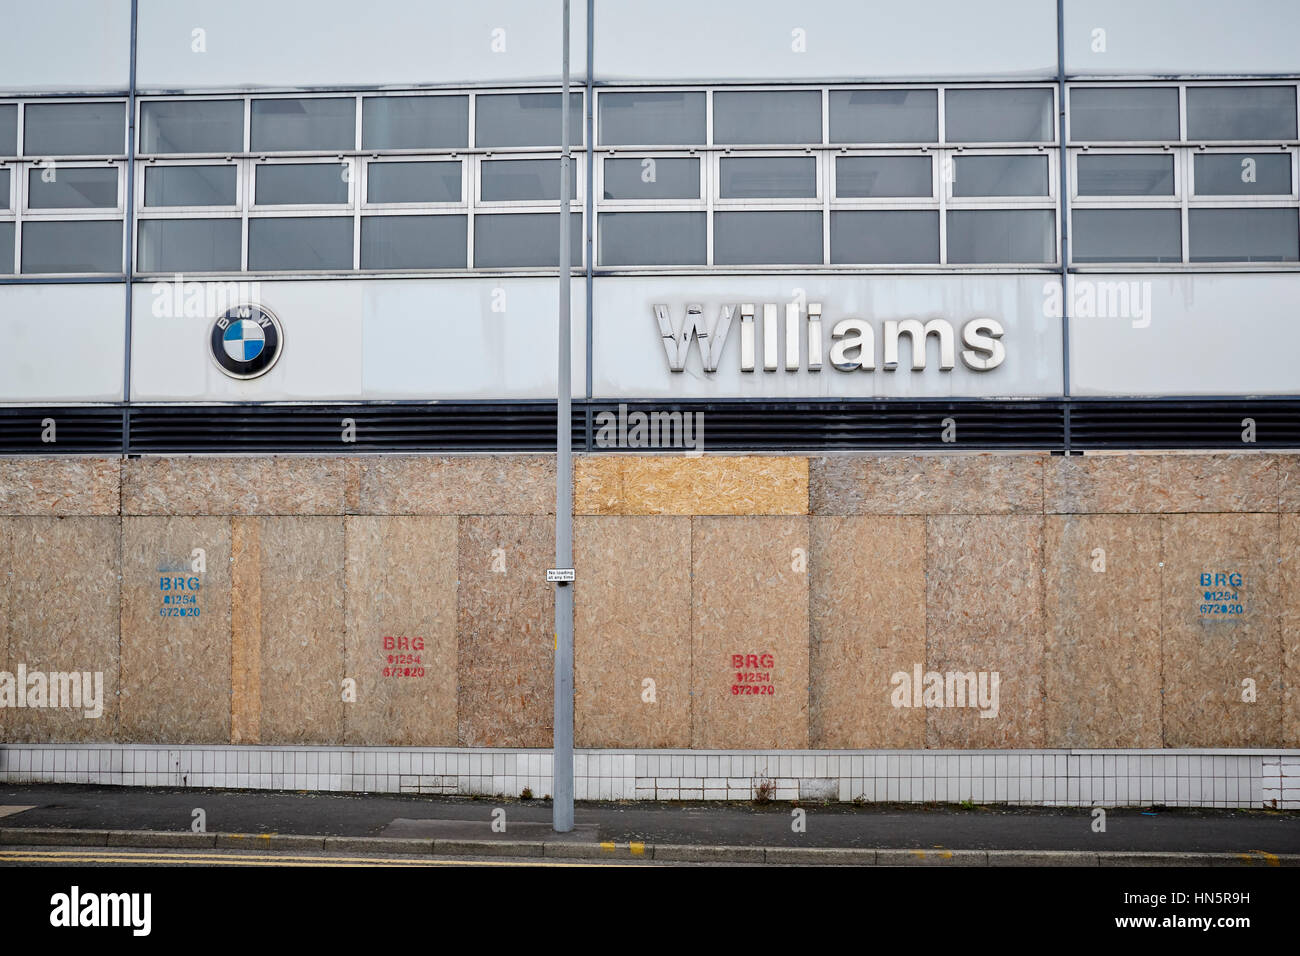 Una desacumulación cerradas y precintadas windows del ex concesionario de coches BMW para Williams en Bolton, Lancashire, Inglaterra, Reino Unido. Foto de stock